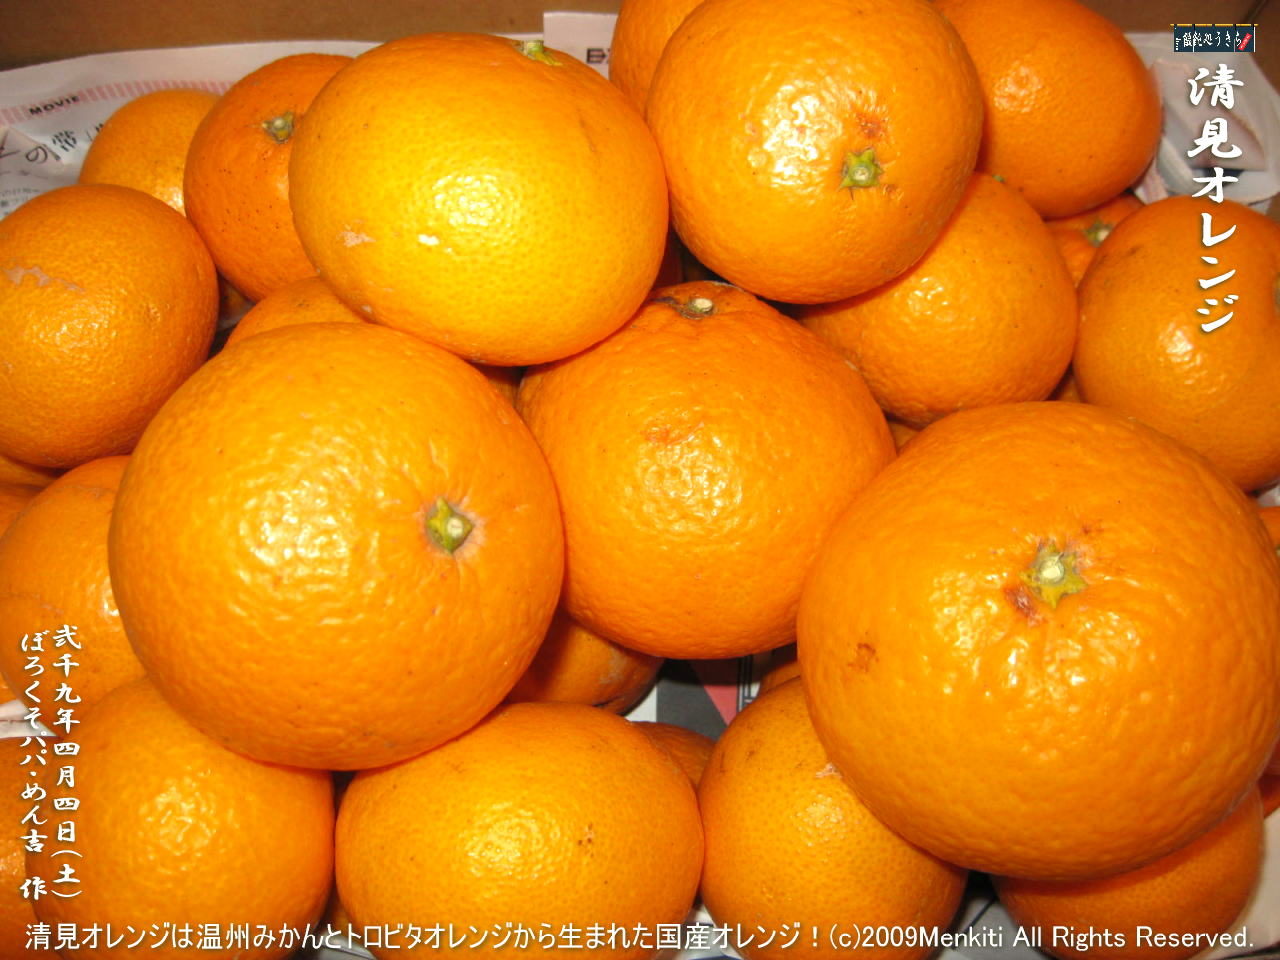 4／4（土）【清見オレンジ】清見オレンジは温州みかんとトロビタオレンジから生まれた国産オレンジ！＠キャツピ＆めん吉の【ぼろくそパパの独り言】
　　　　▼クリックで1280x960pxlsに拡大します。